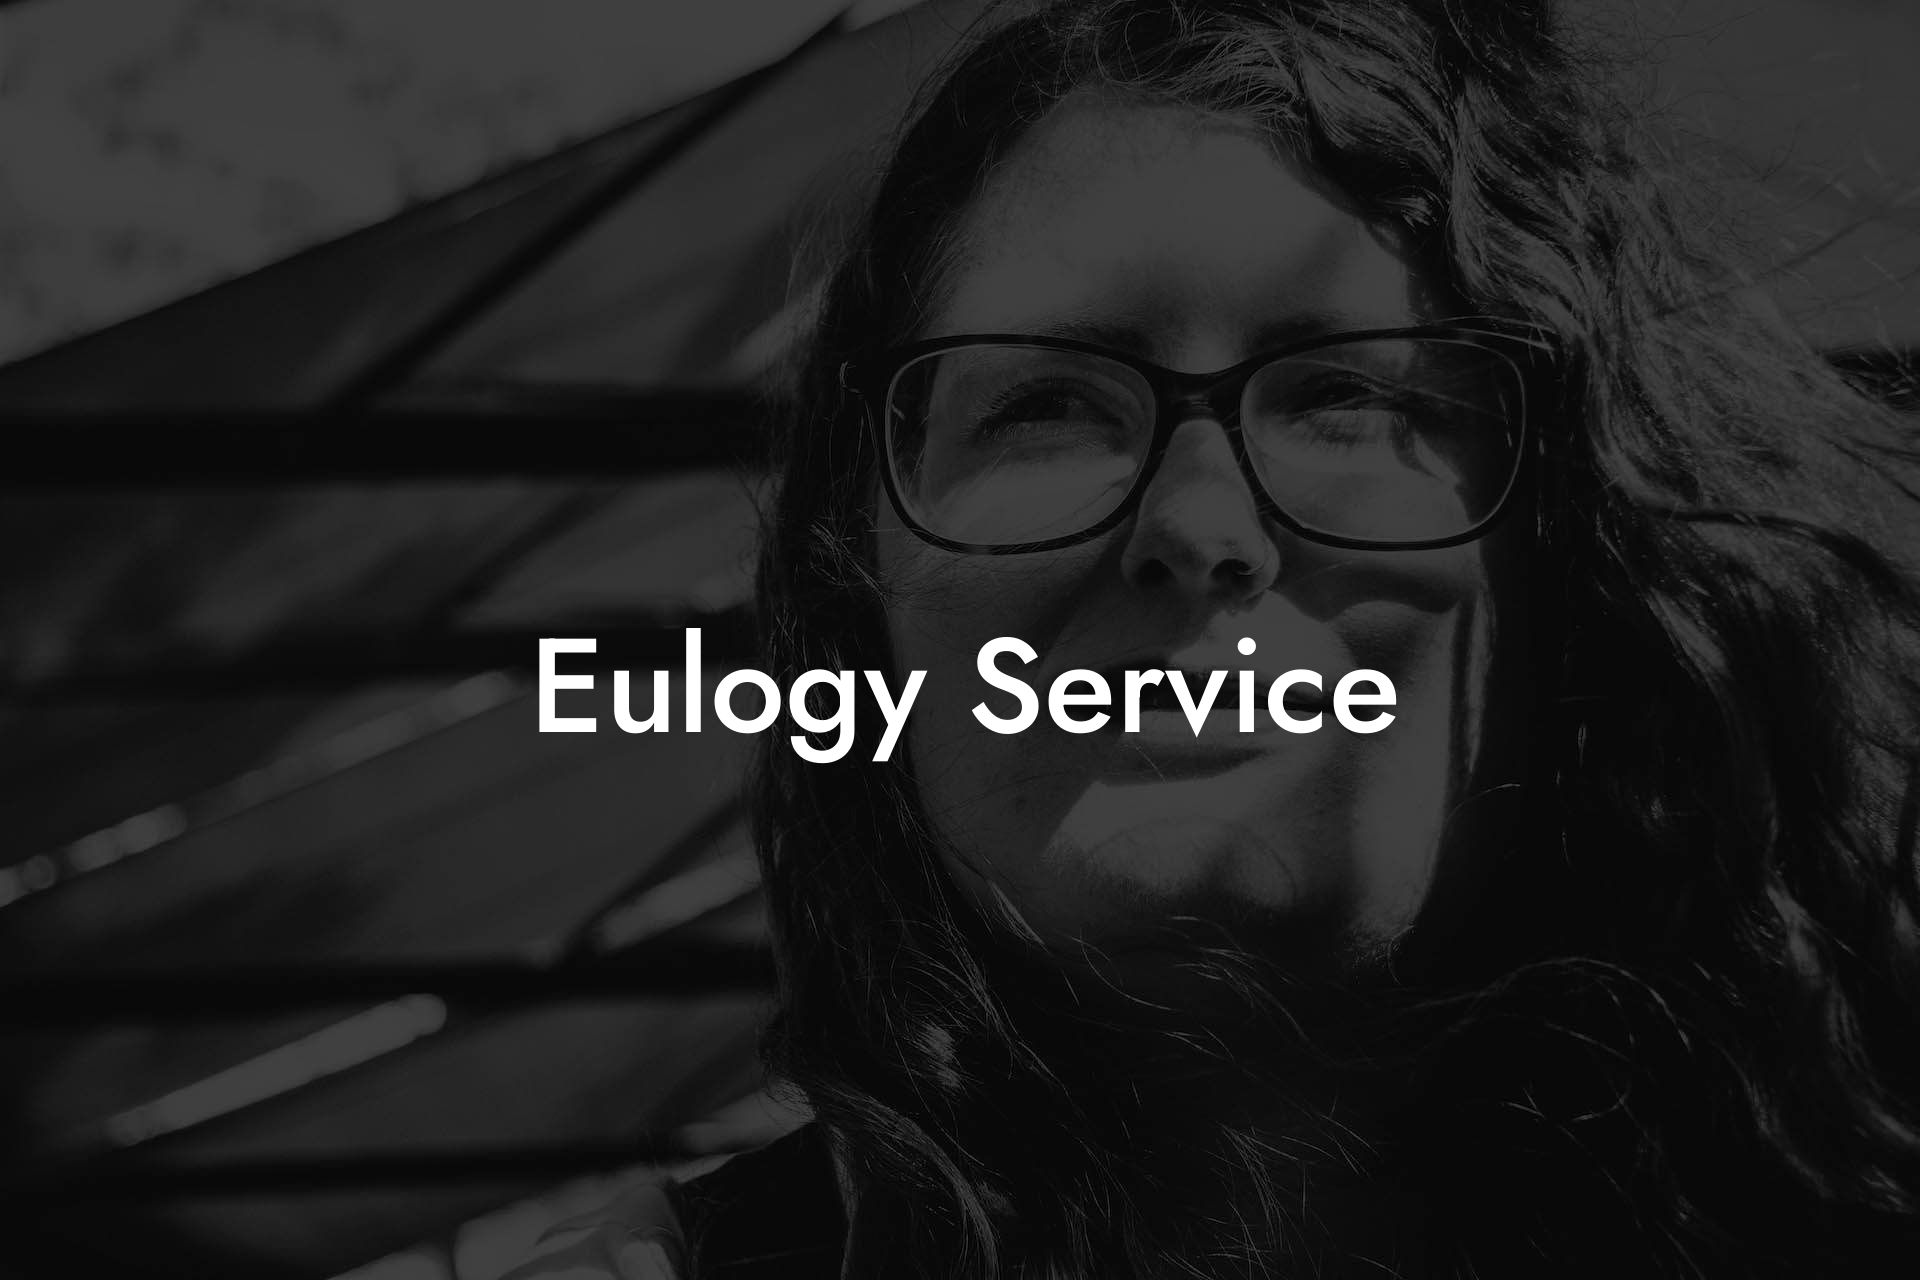 Eulogy Service